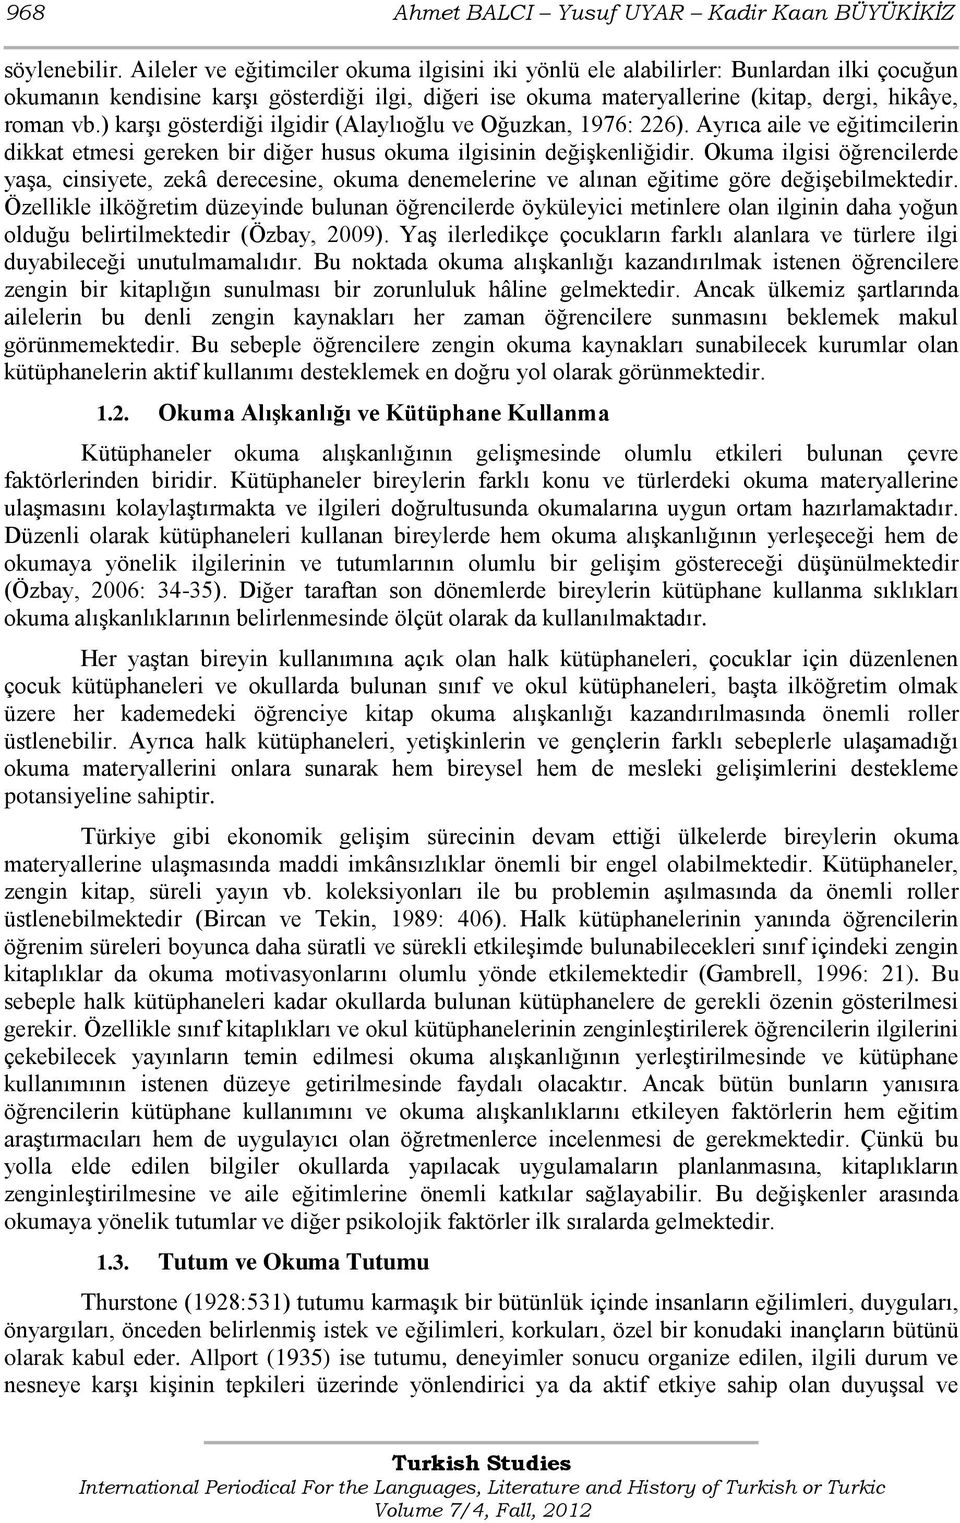 ) karģı gösterdiği ilgidir (Alaylıoğlu ve Oğuzkan, 1976: 226). Ayrıca aile ve eğitimcilerin dikkat etmesi gereken bir diğer husus okuma ilgisinin değiģkenliğidir.